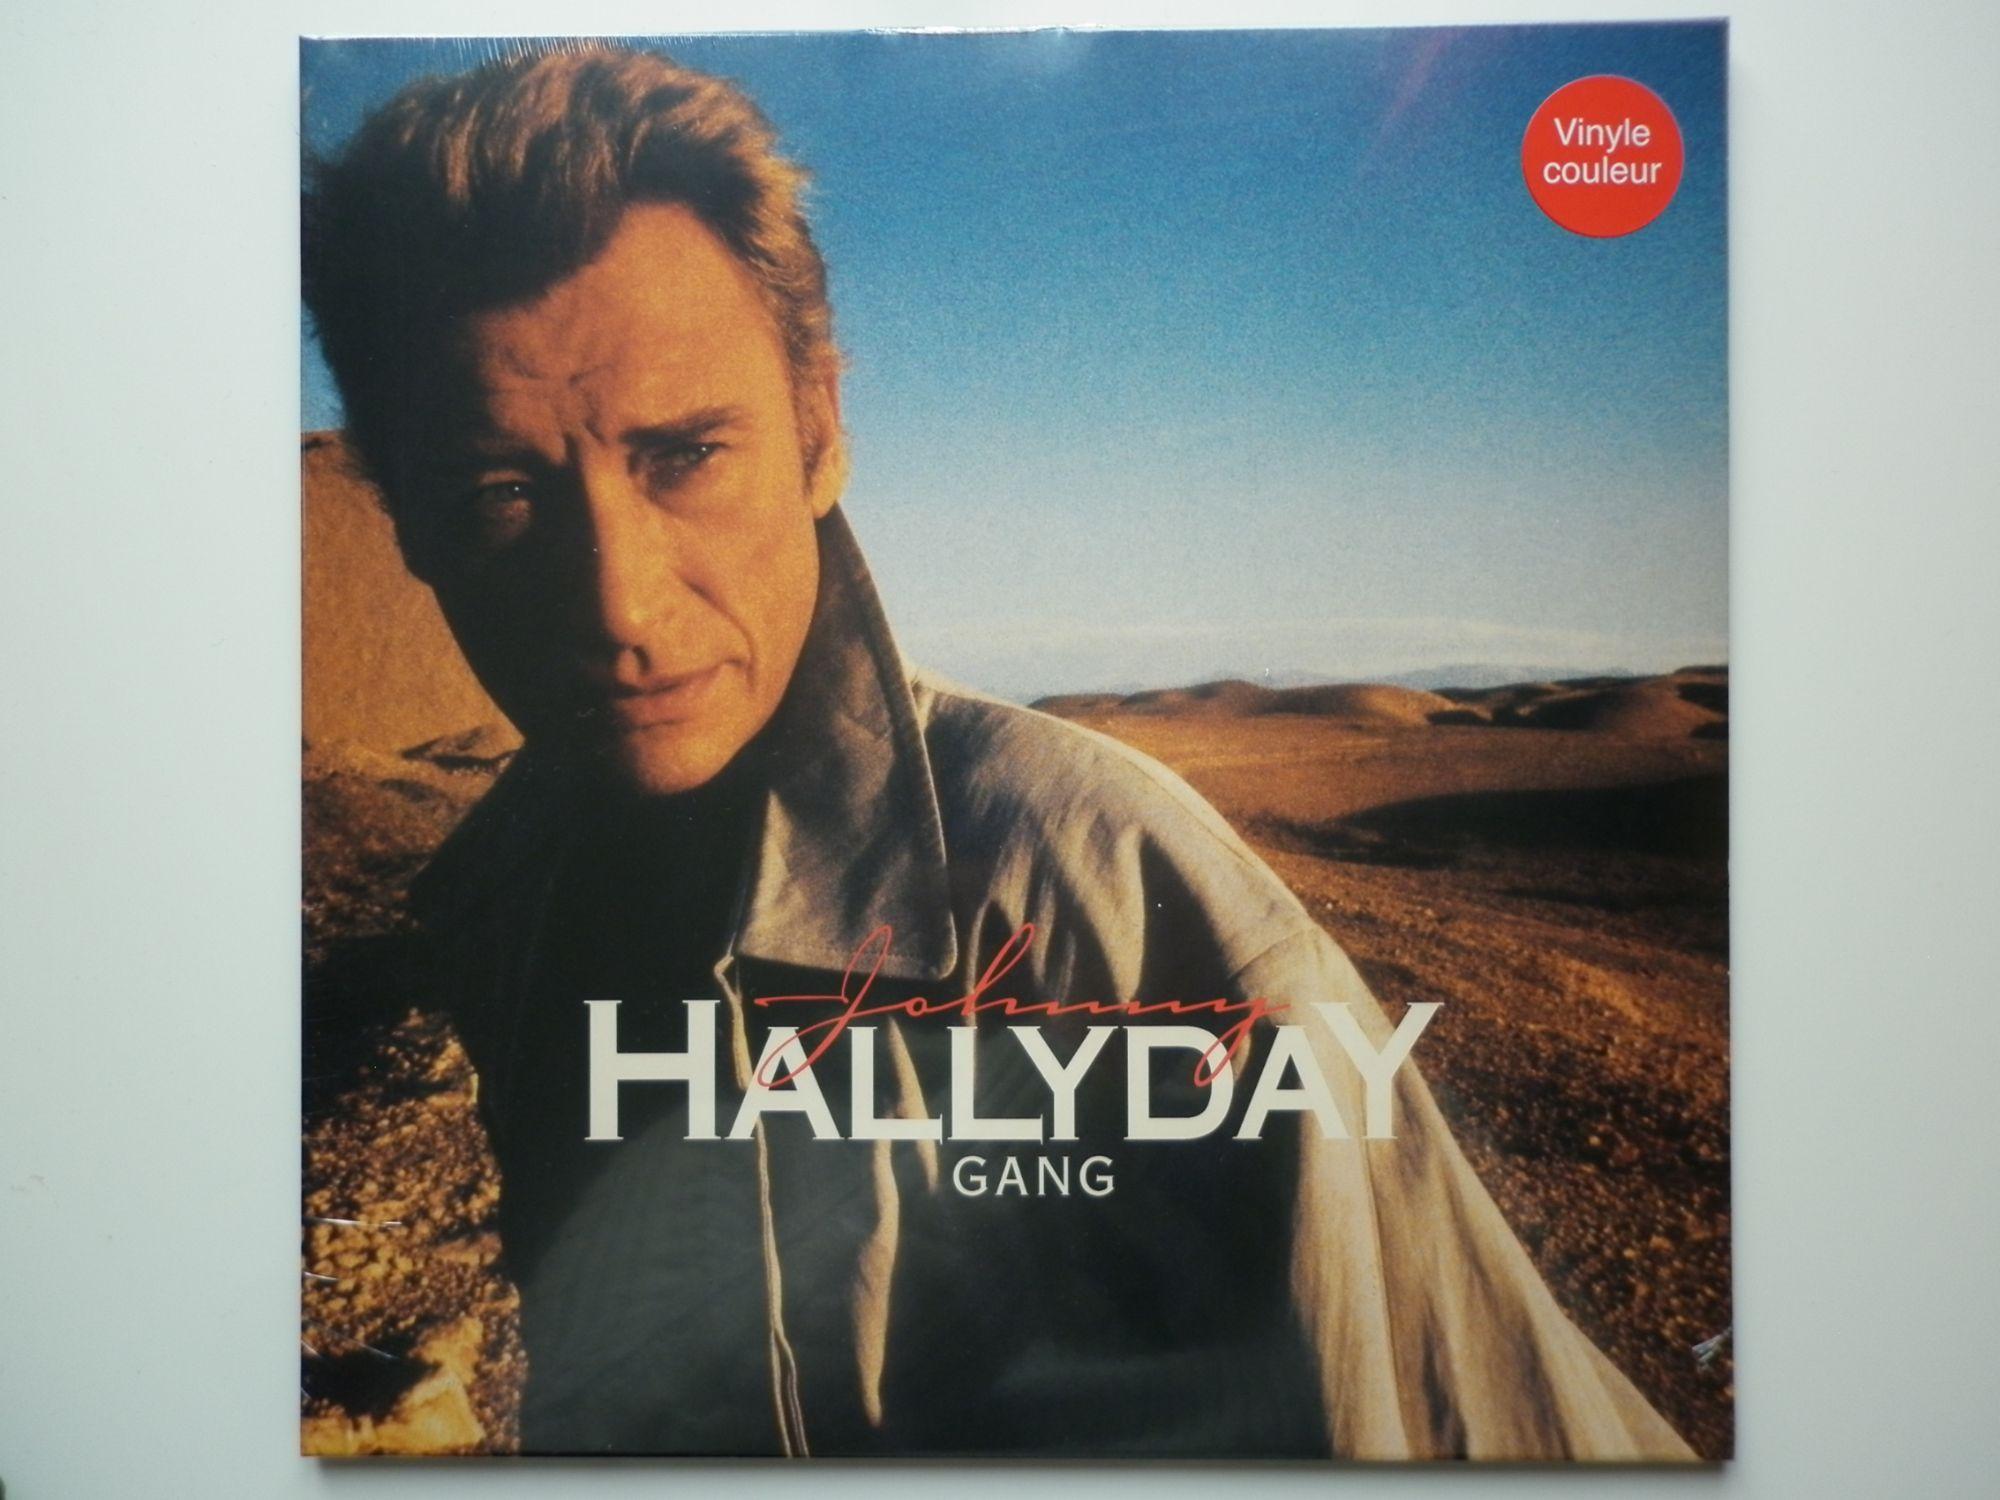 Johnny Hallyday 33Tours vinyle Le Disque D'Or De Johnny Hallyday vinyle  couleur rouge: Johnny HALLYDAY: : CD et Vinyles}